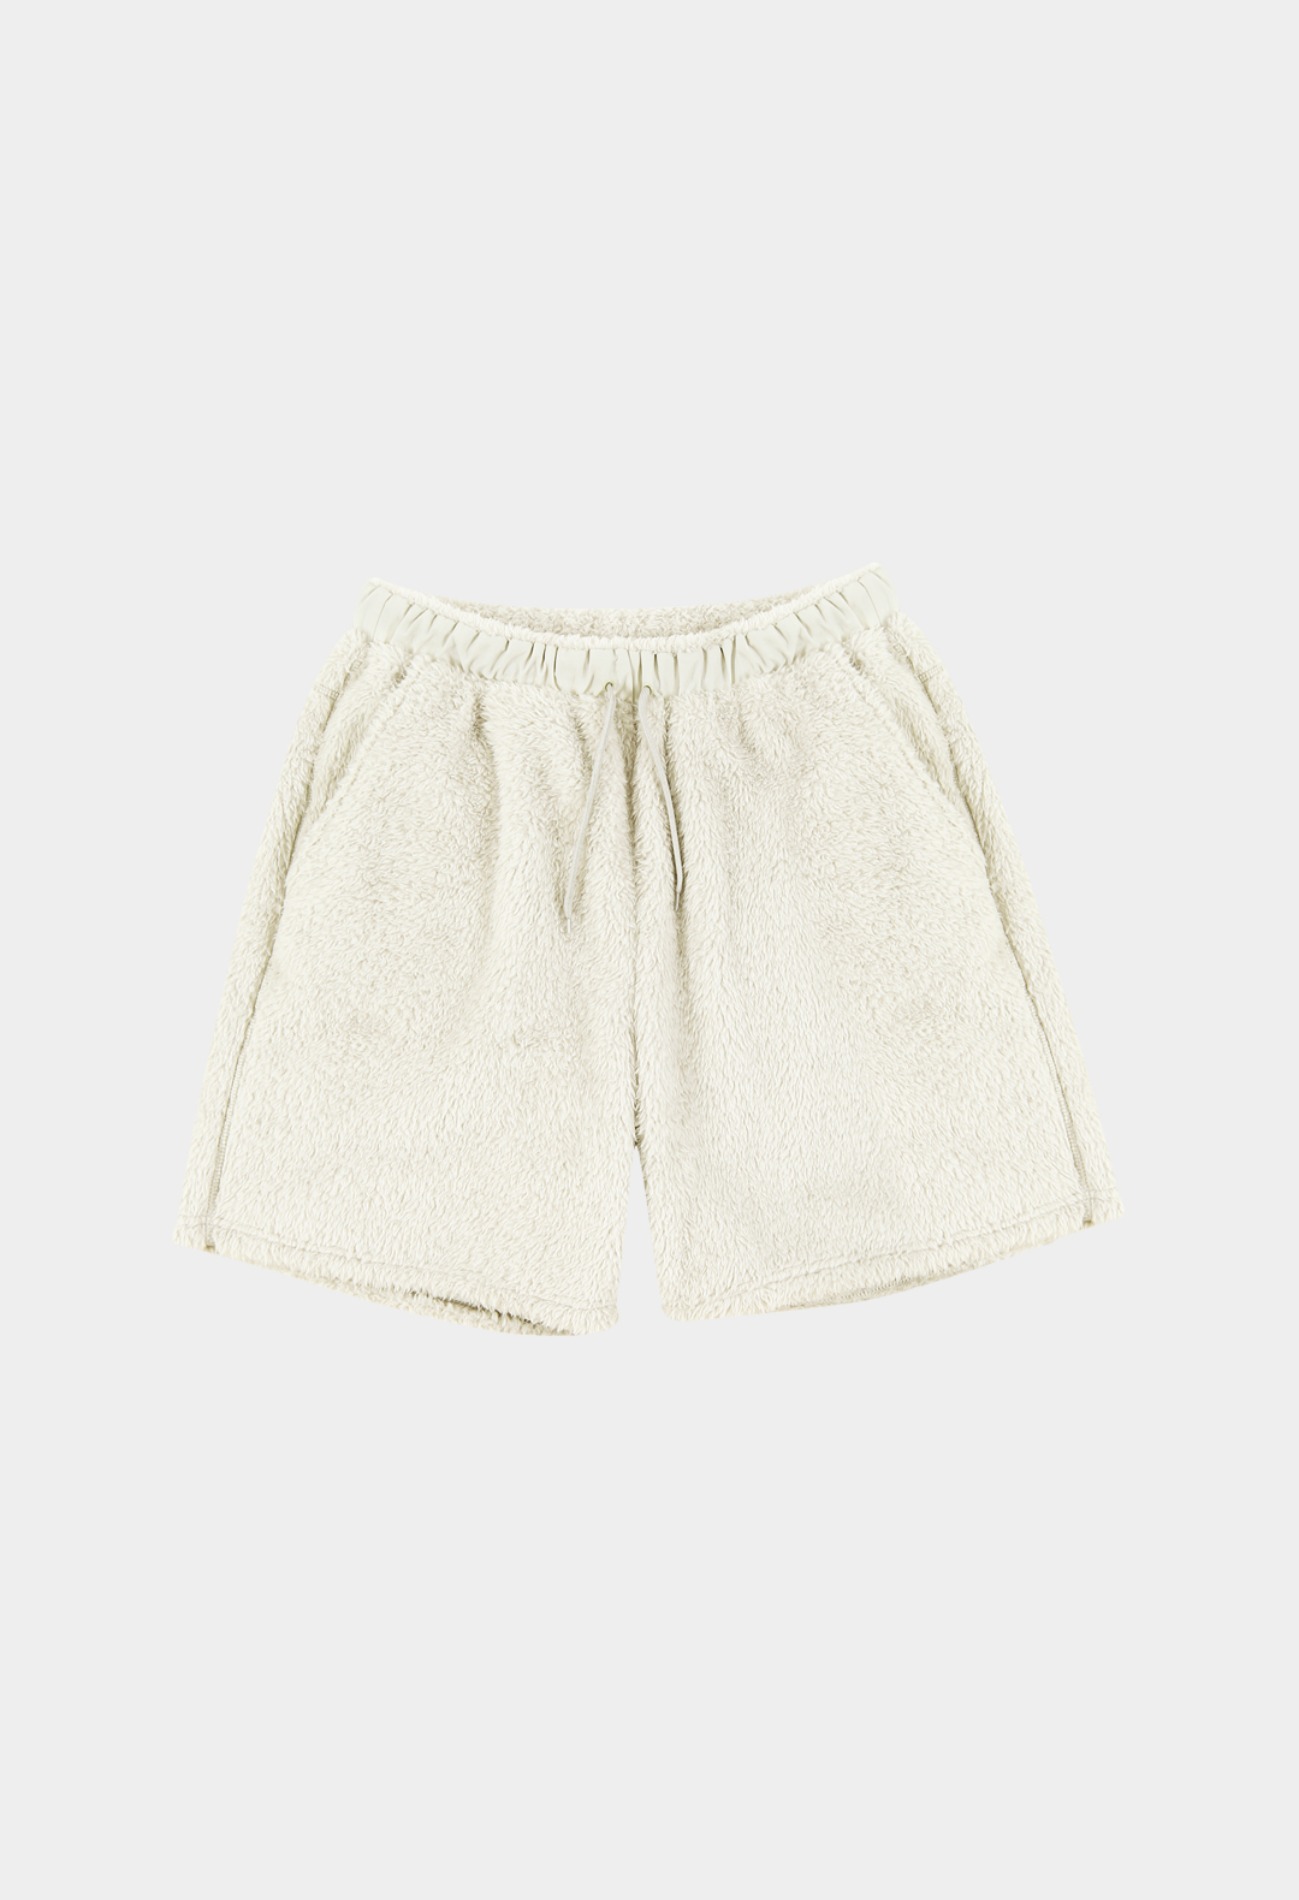 keek [필로우디] Tech Fleece Pillowdy Short Pants - Ivory 스트릿패션 유니섹스브랜드 커플시밀러룩 남자쇼핑몰 여성의류쇼핑몰 후드티 힙색